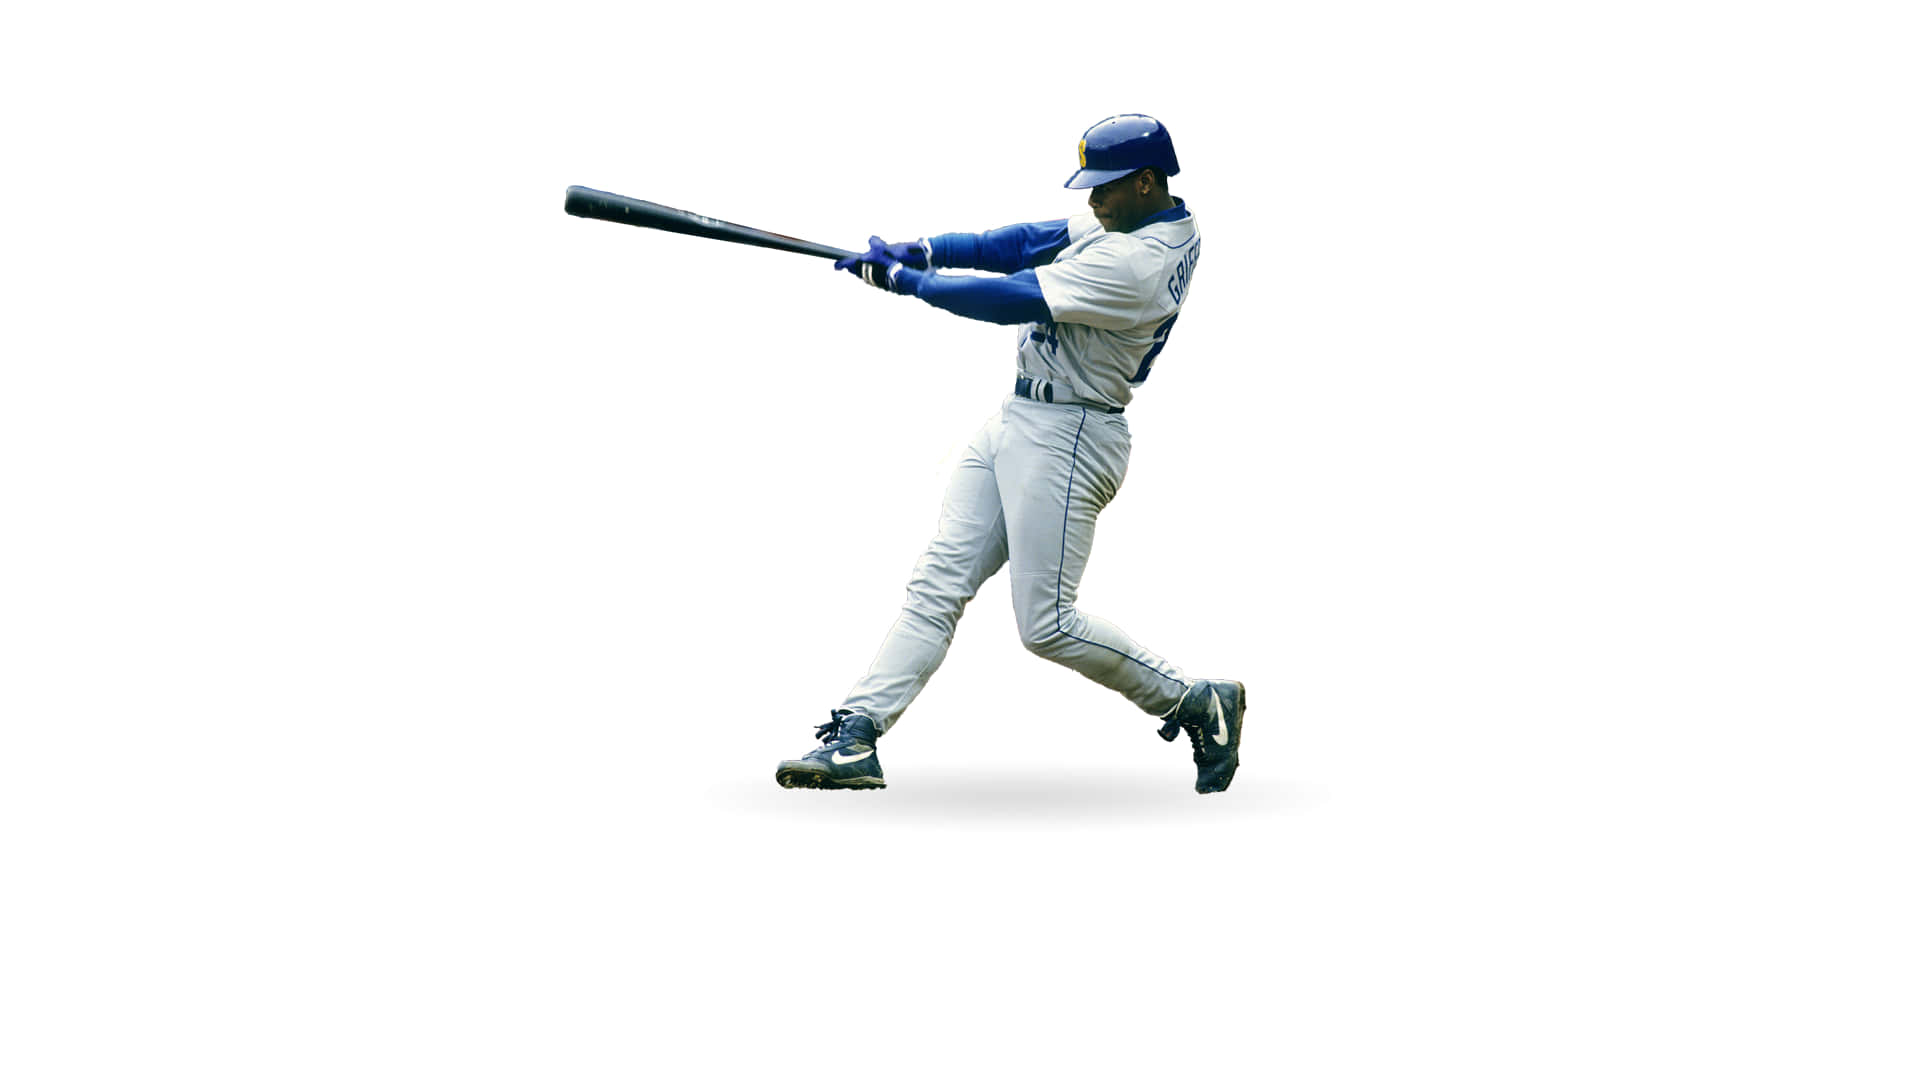 Den legendariske baseball-spiller Ken Griffey Jr er vist svingende en kølle. Wallpaper